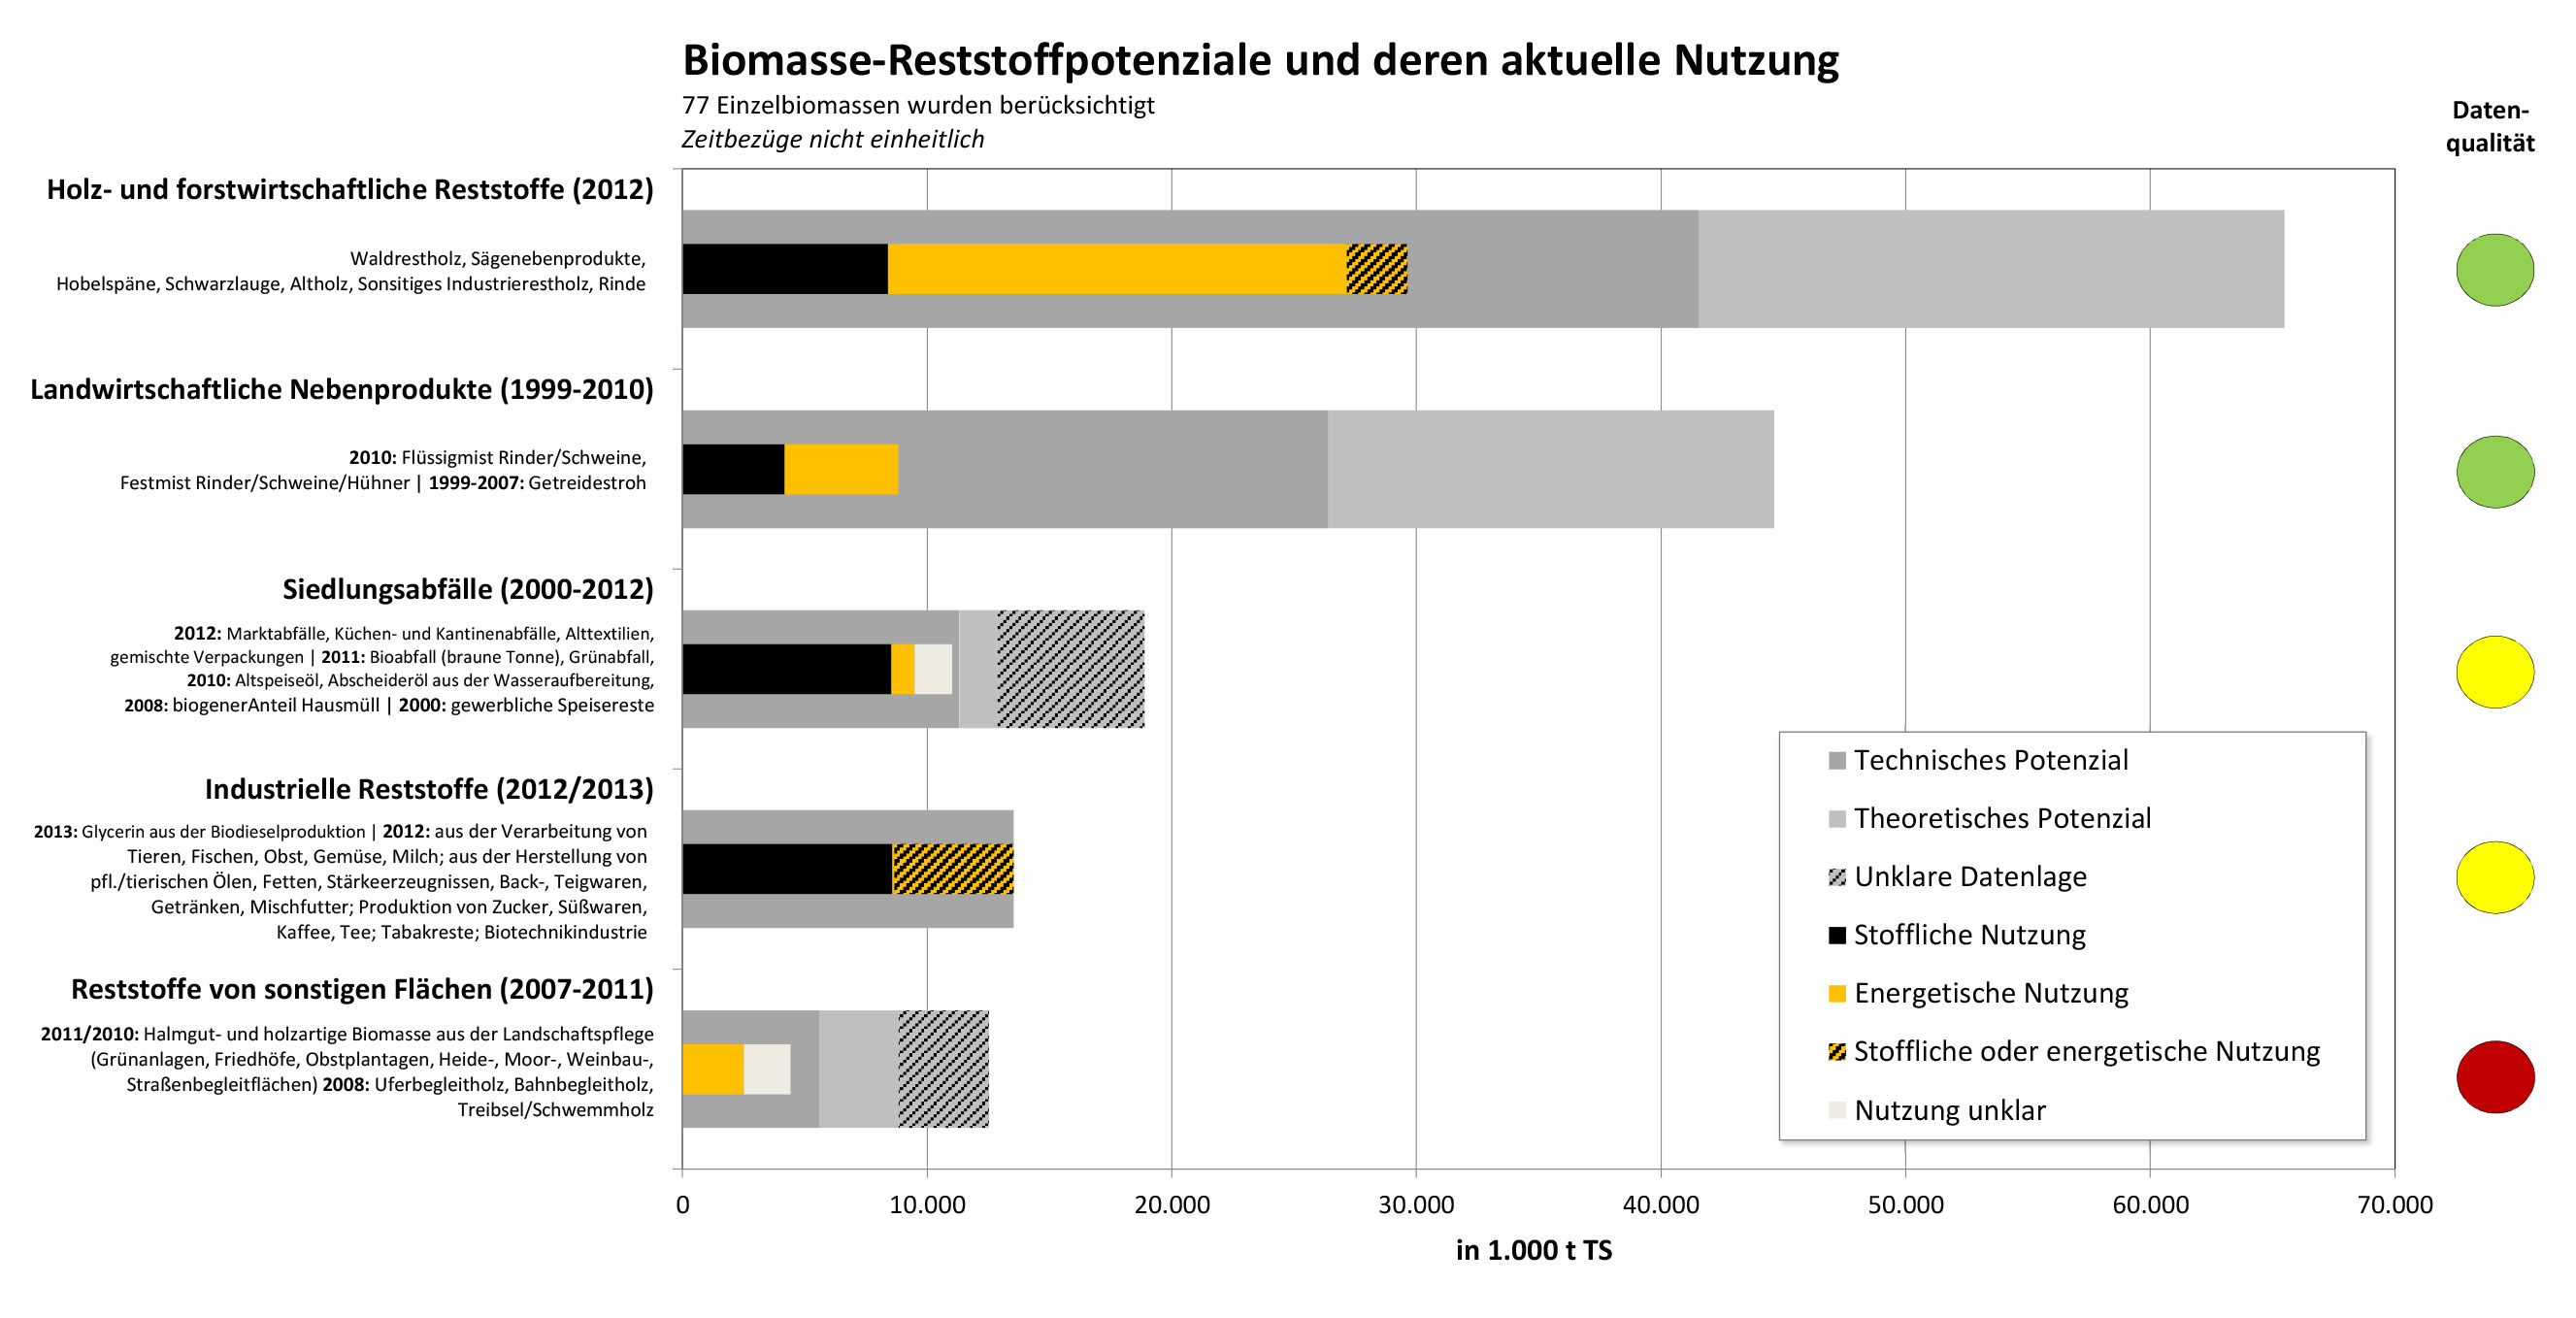 Biomasse-Restoffpotenziale und deren aktuelle Nutzung